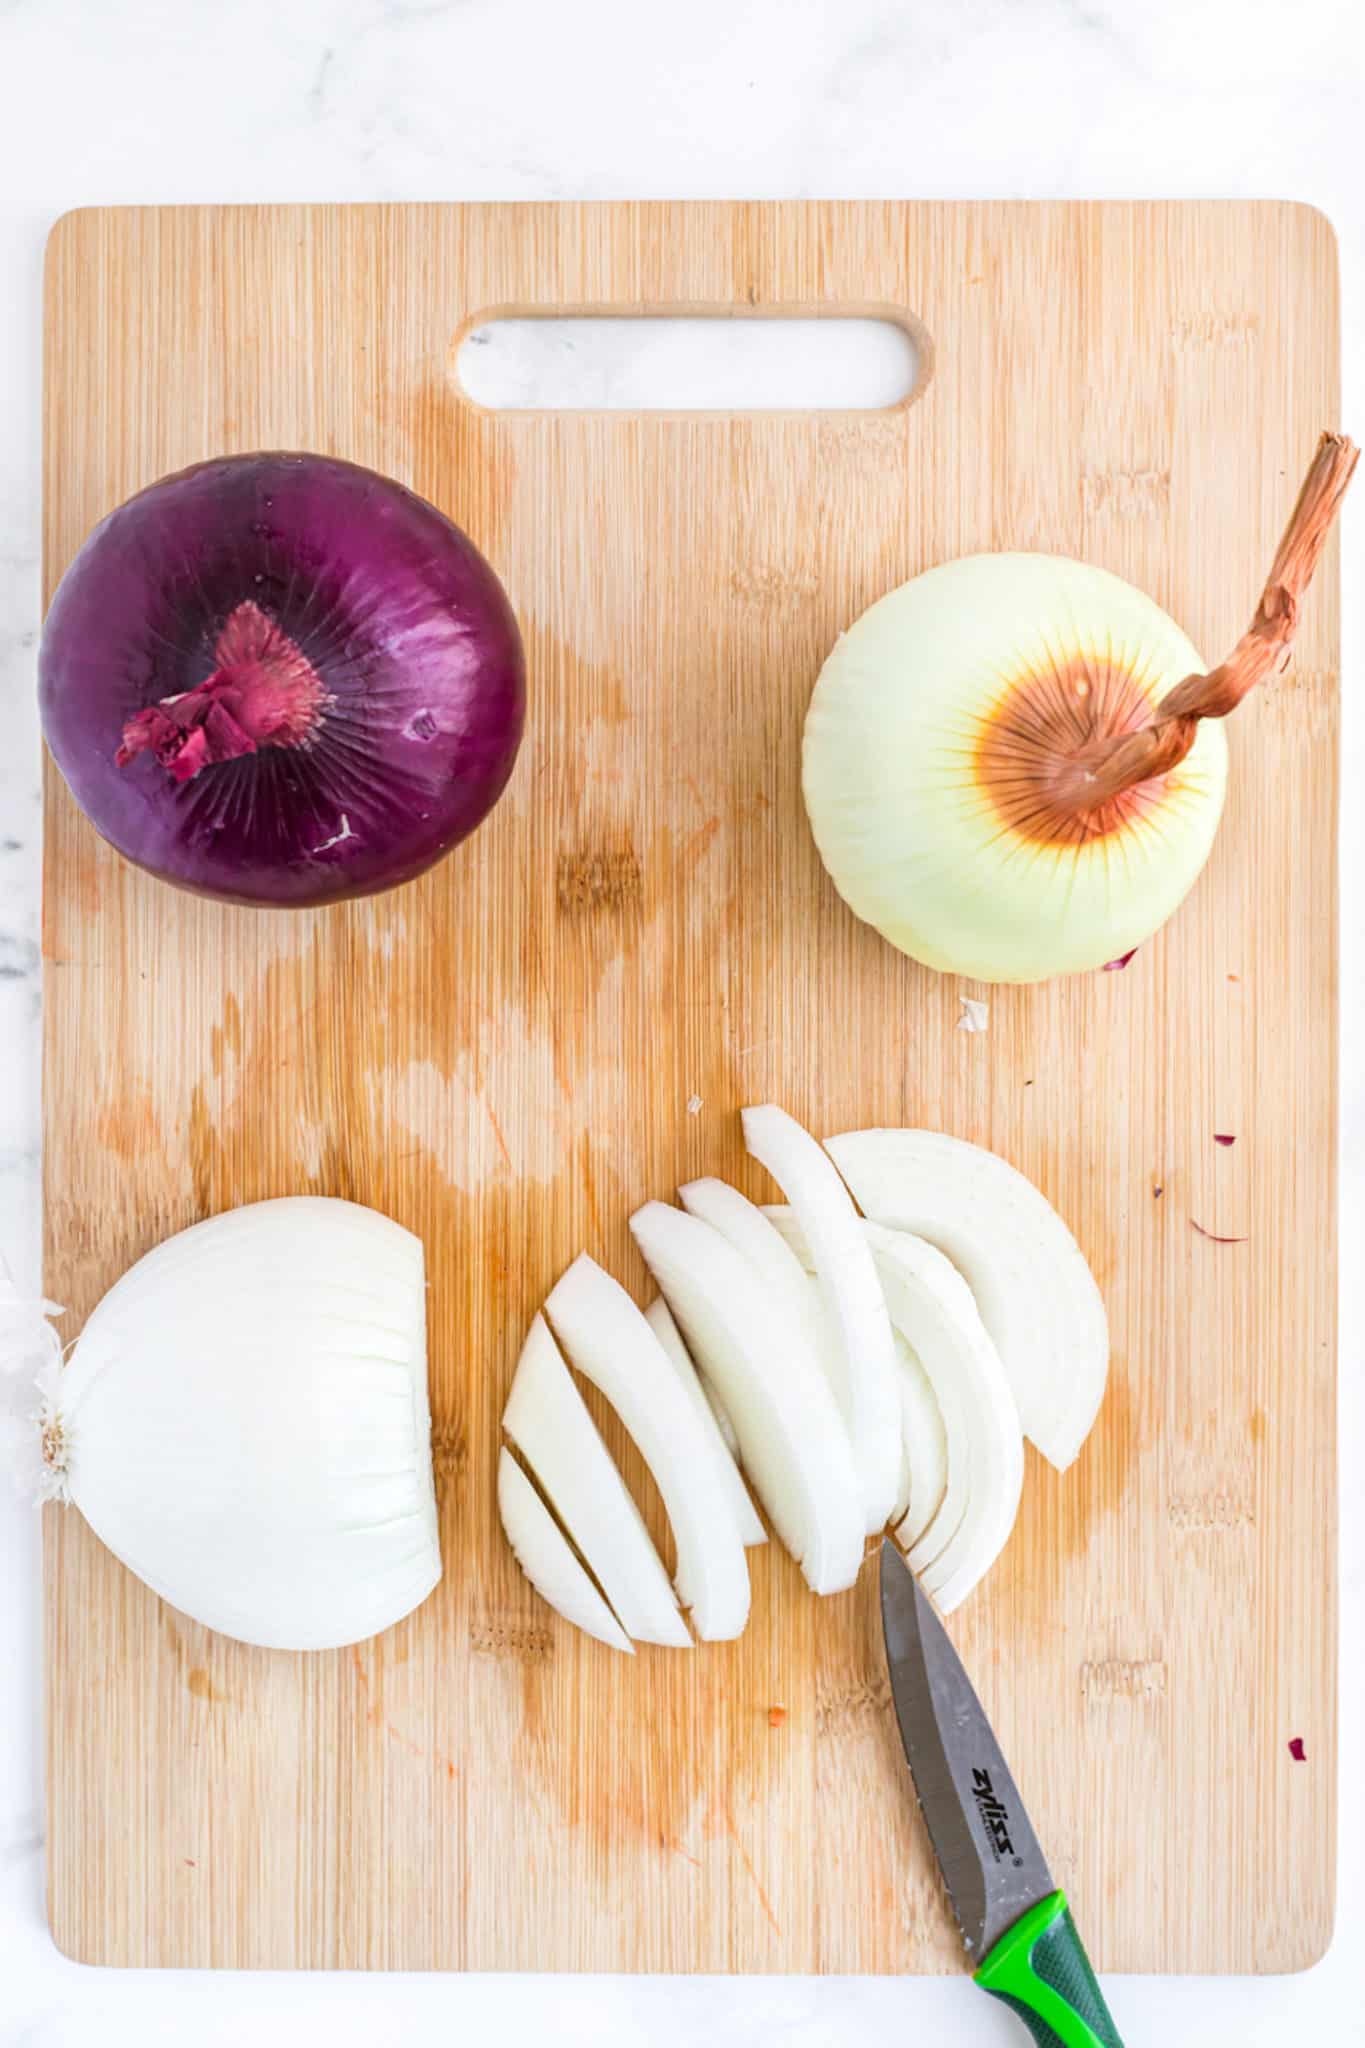 Sliced onion on a cutting board